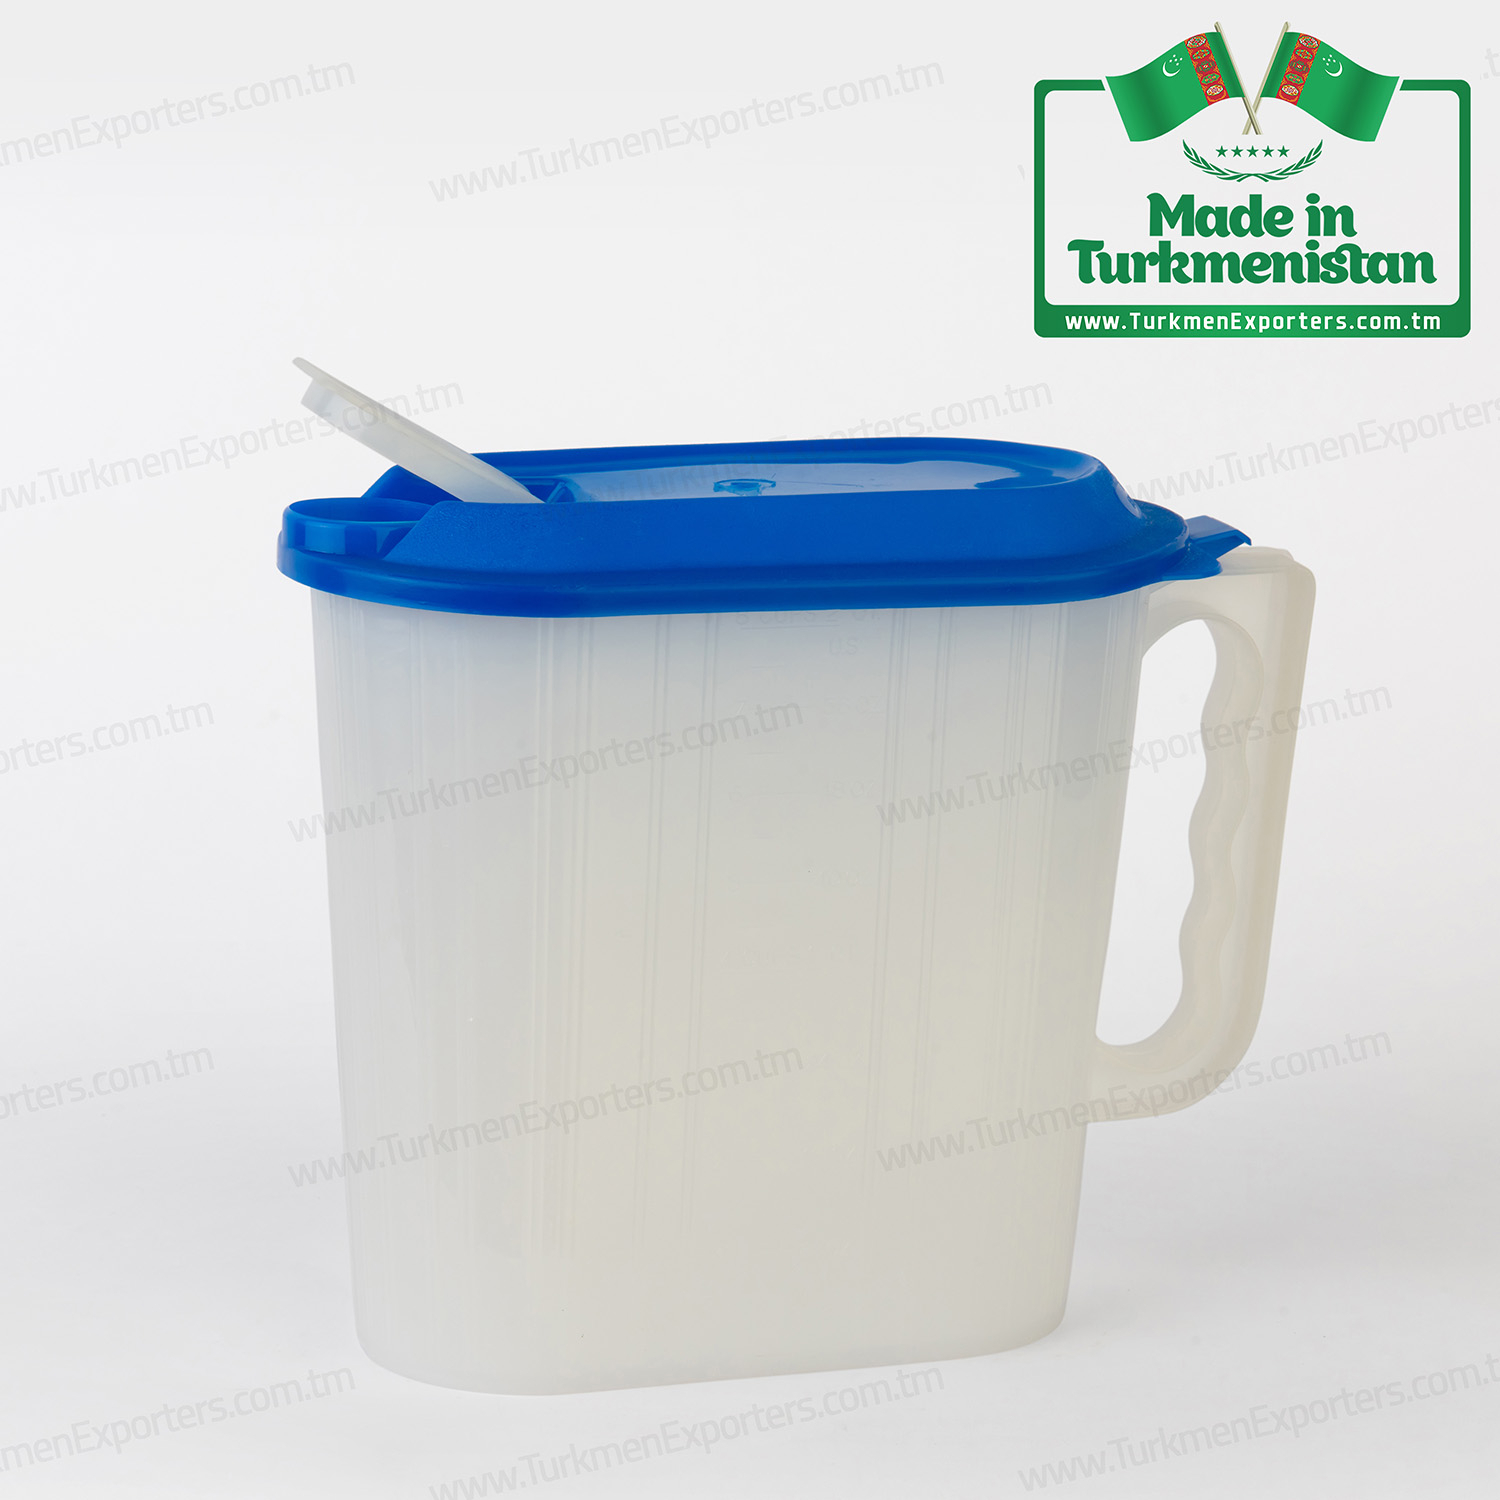 Plastic water jug Made in Turkmenistan | Kuwwatly Turkmen individual enterprise